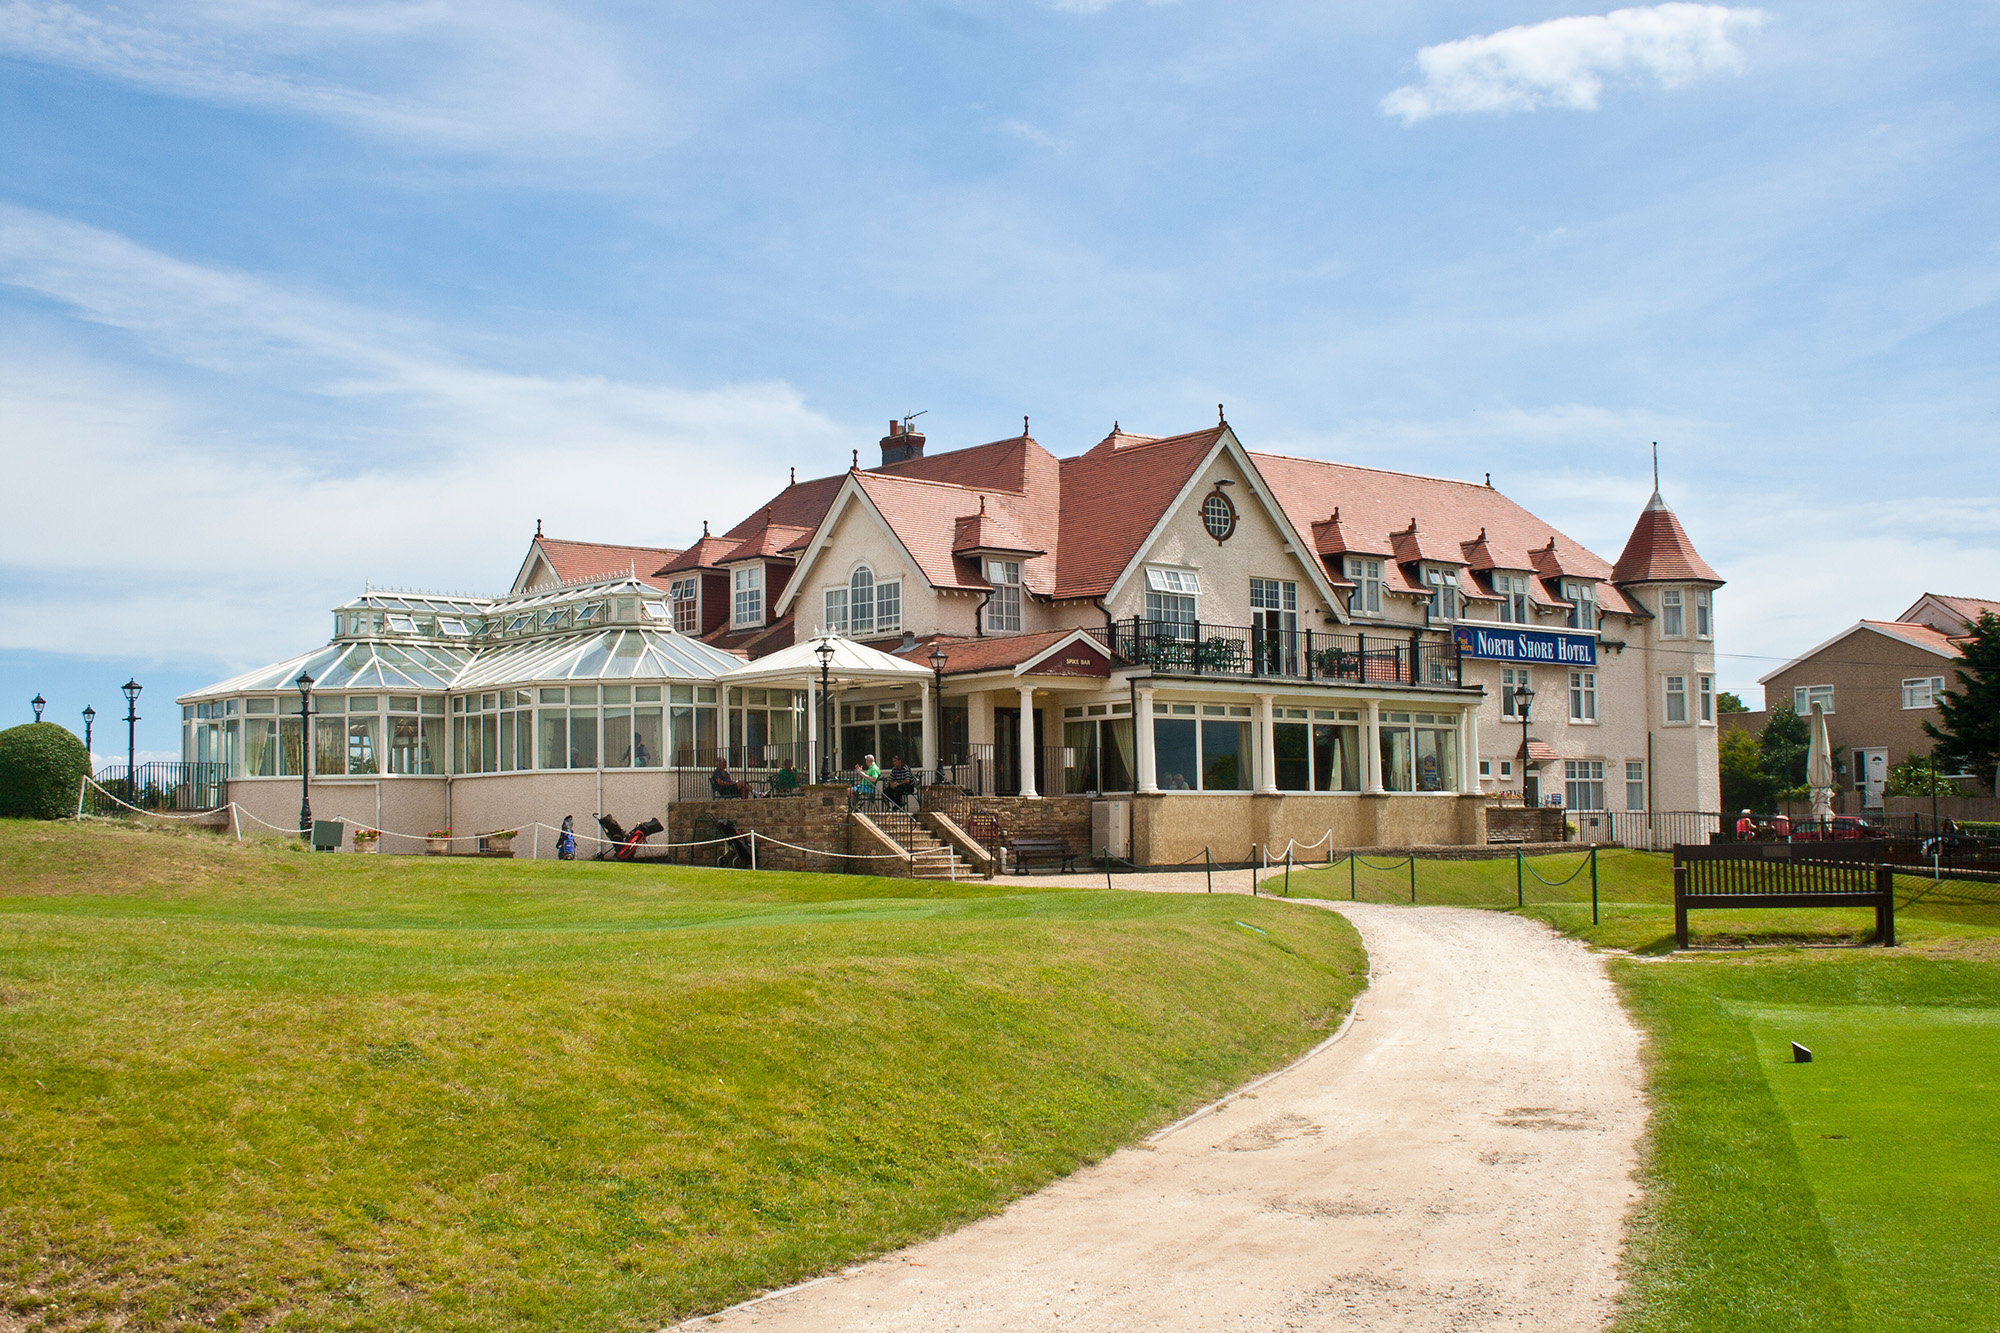 North Shore Hotel Skegness golf